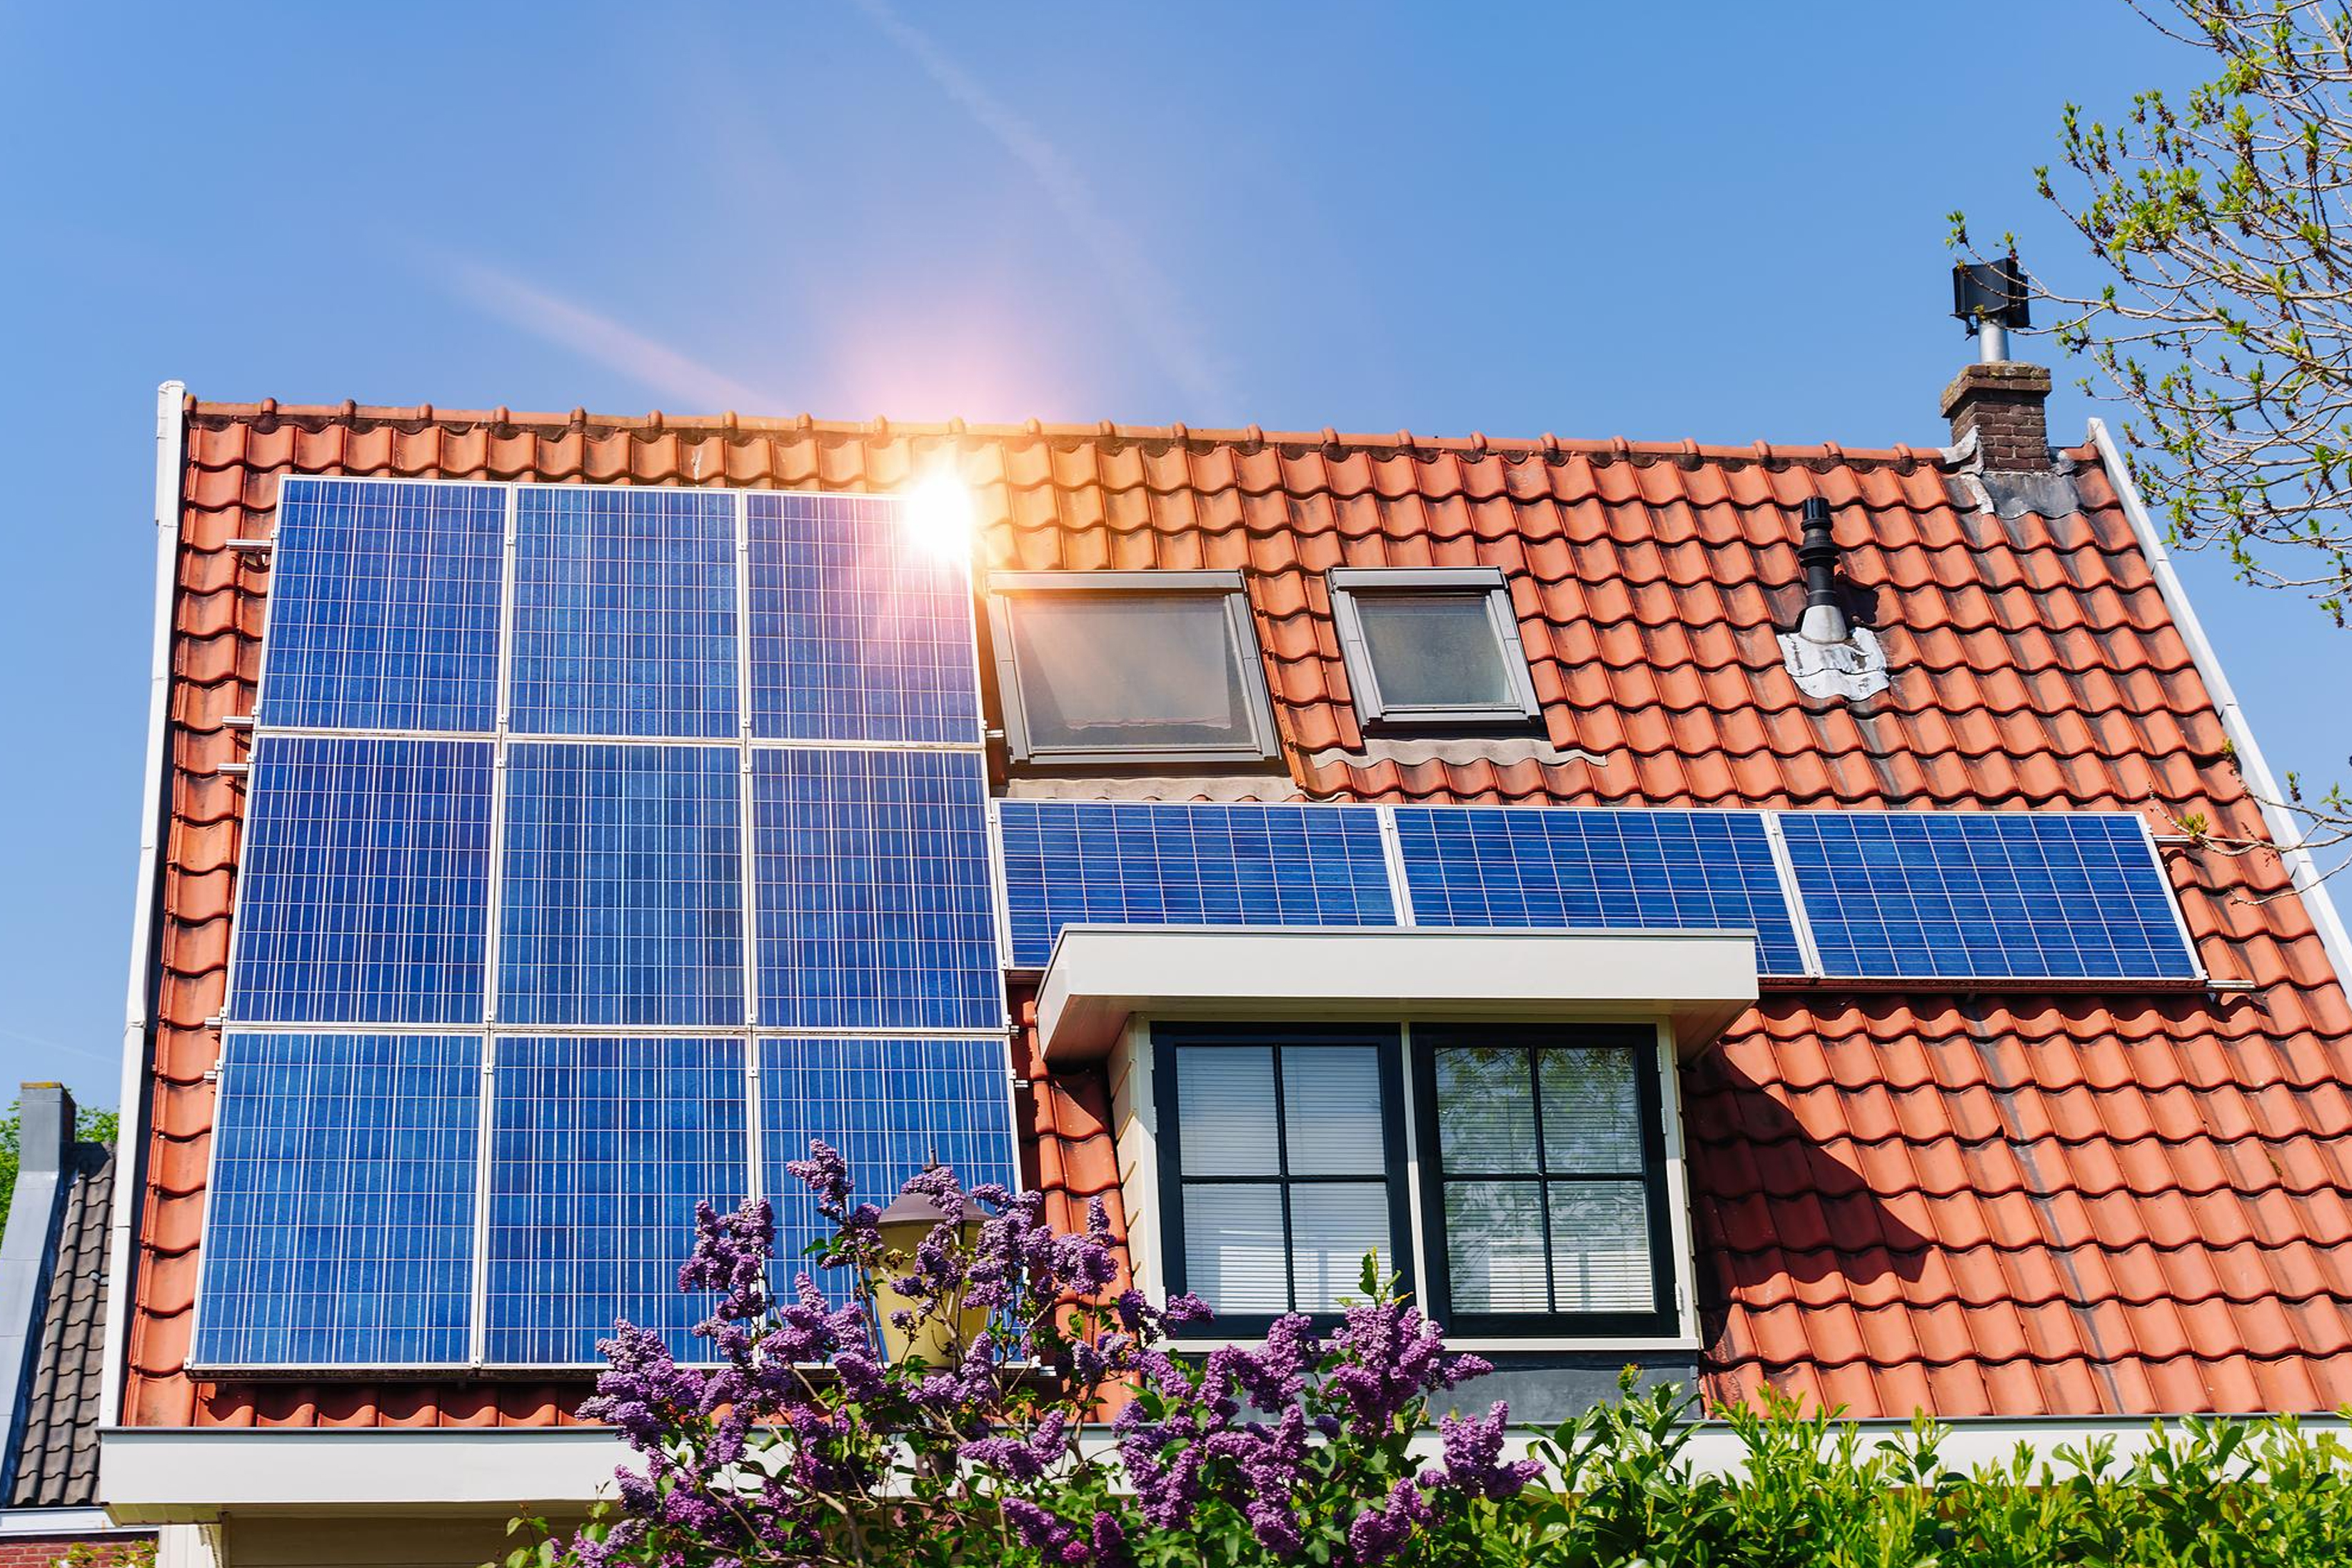 Best Solar Panels Australia, Solar Panels Brands Australia - Smart House Solar